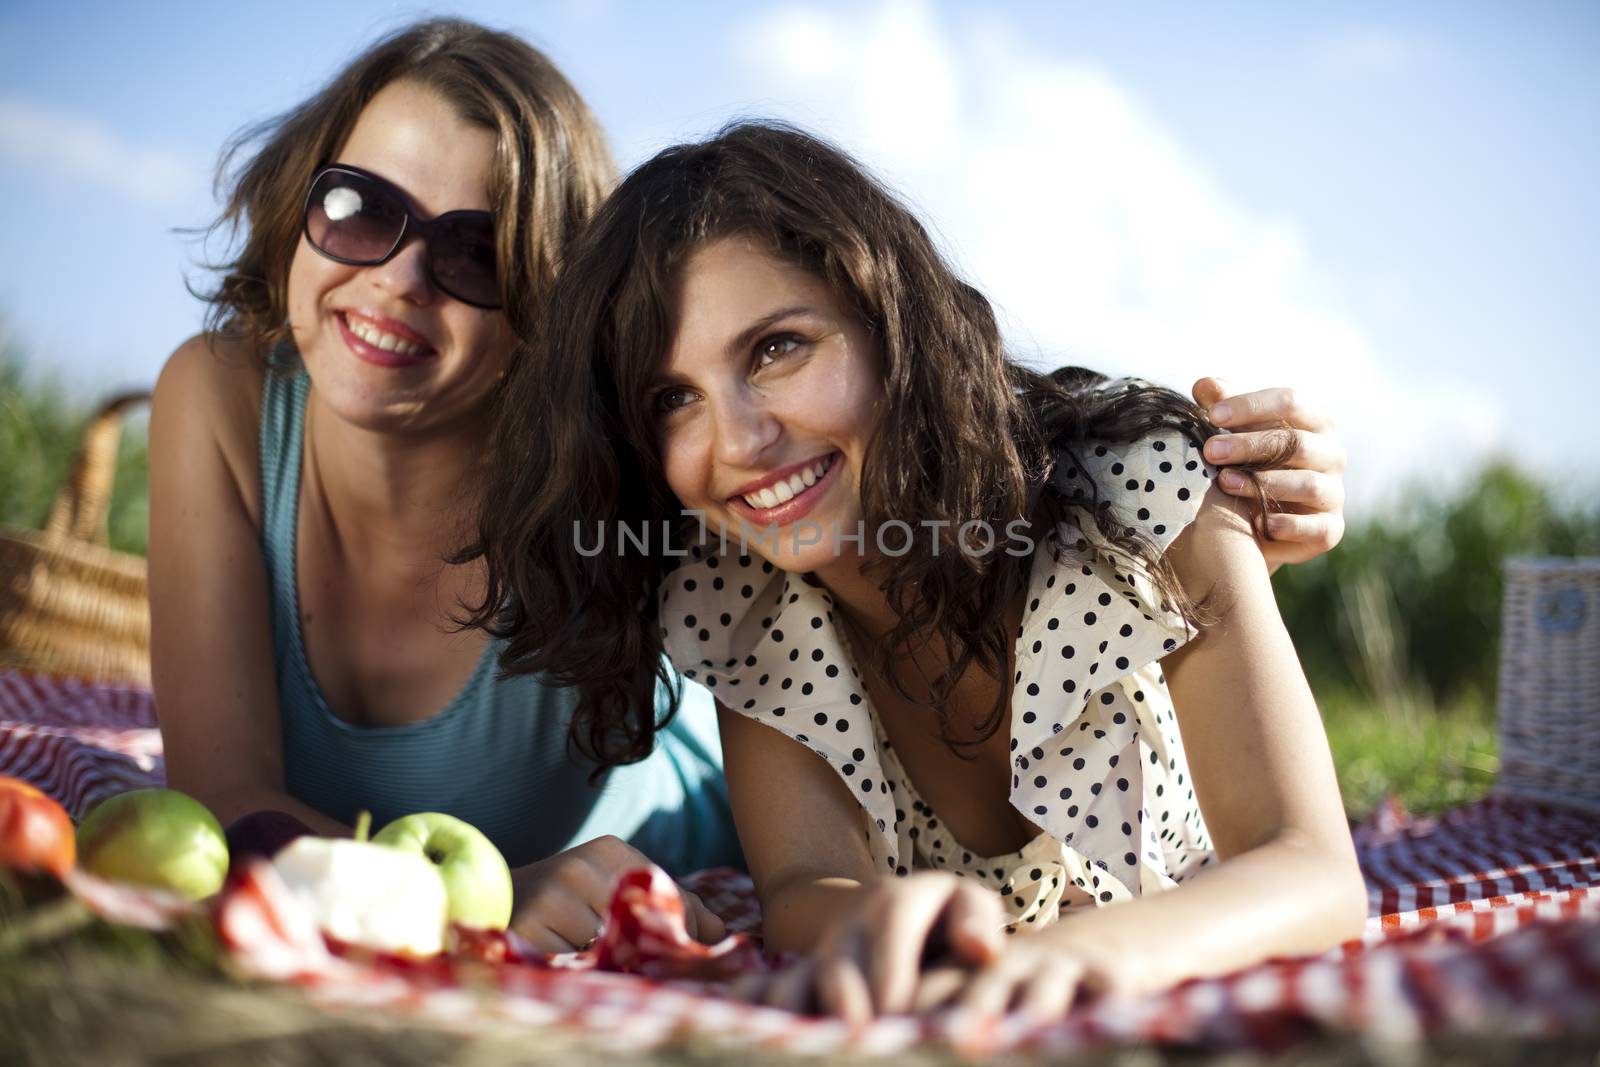 Girls on picnic, summer free time spending